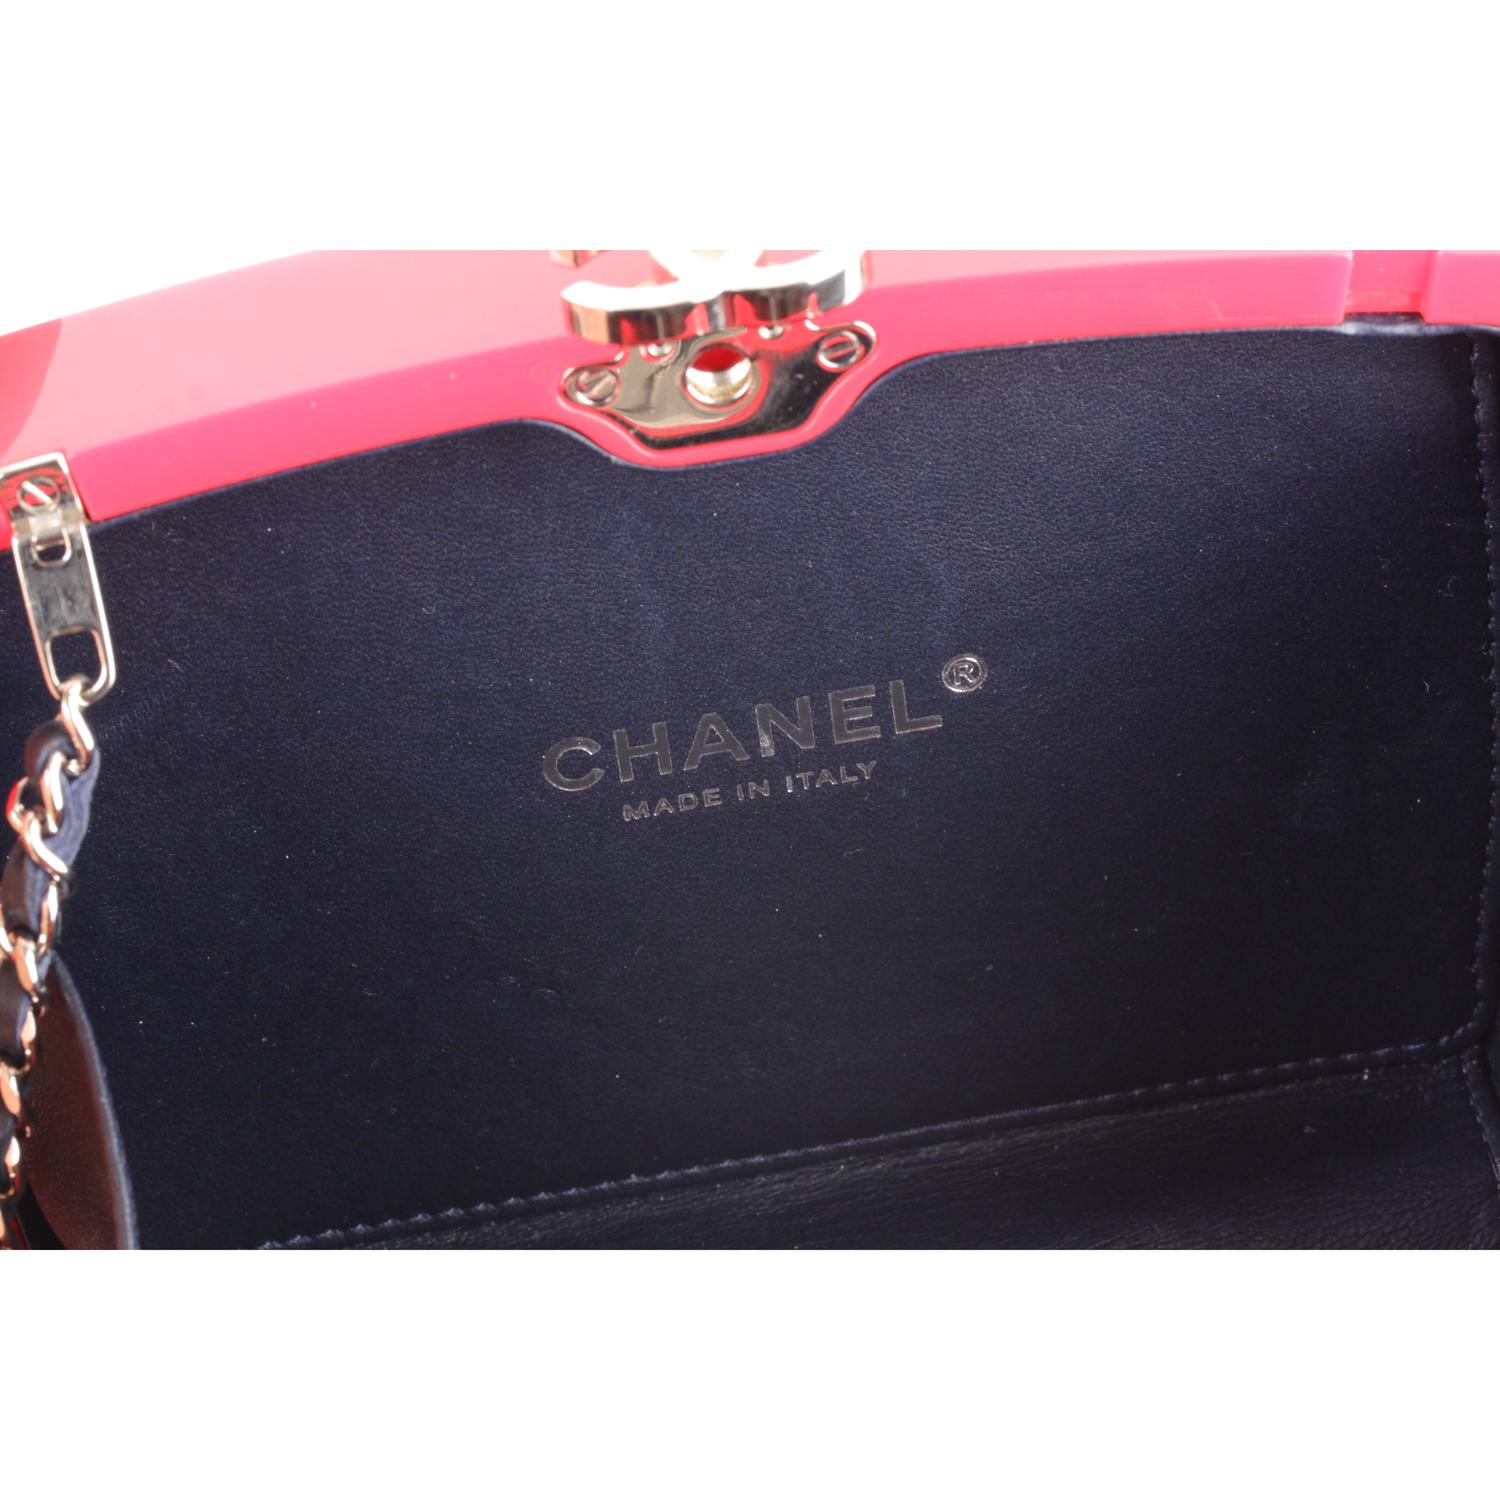 Chanel 2015 Je Ne Suis Pas En Solde Box Clutch with Chain Strap 4